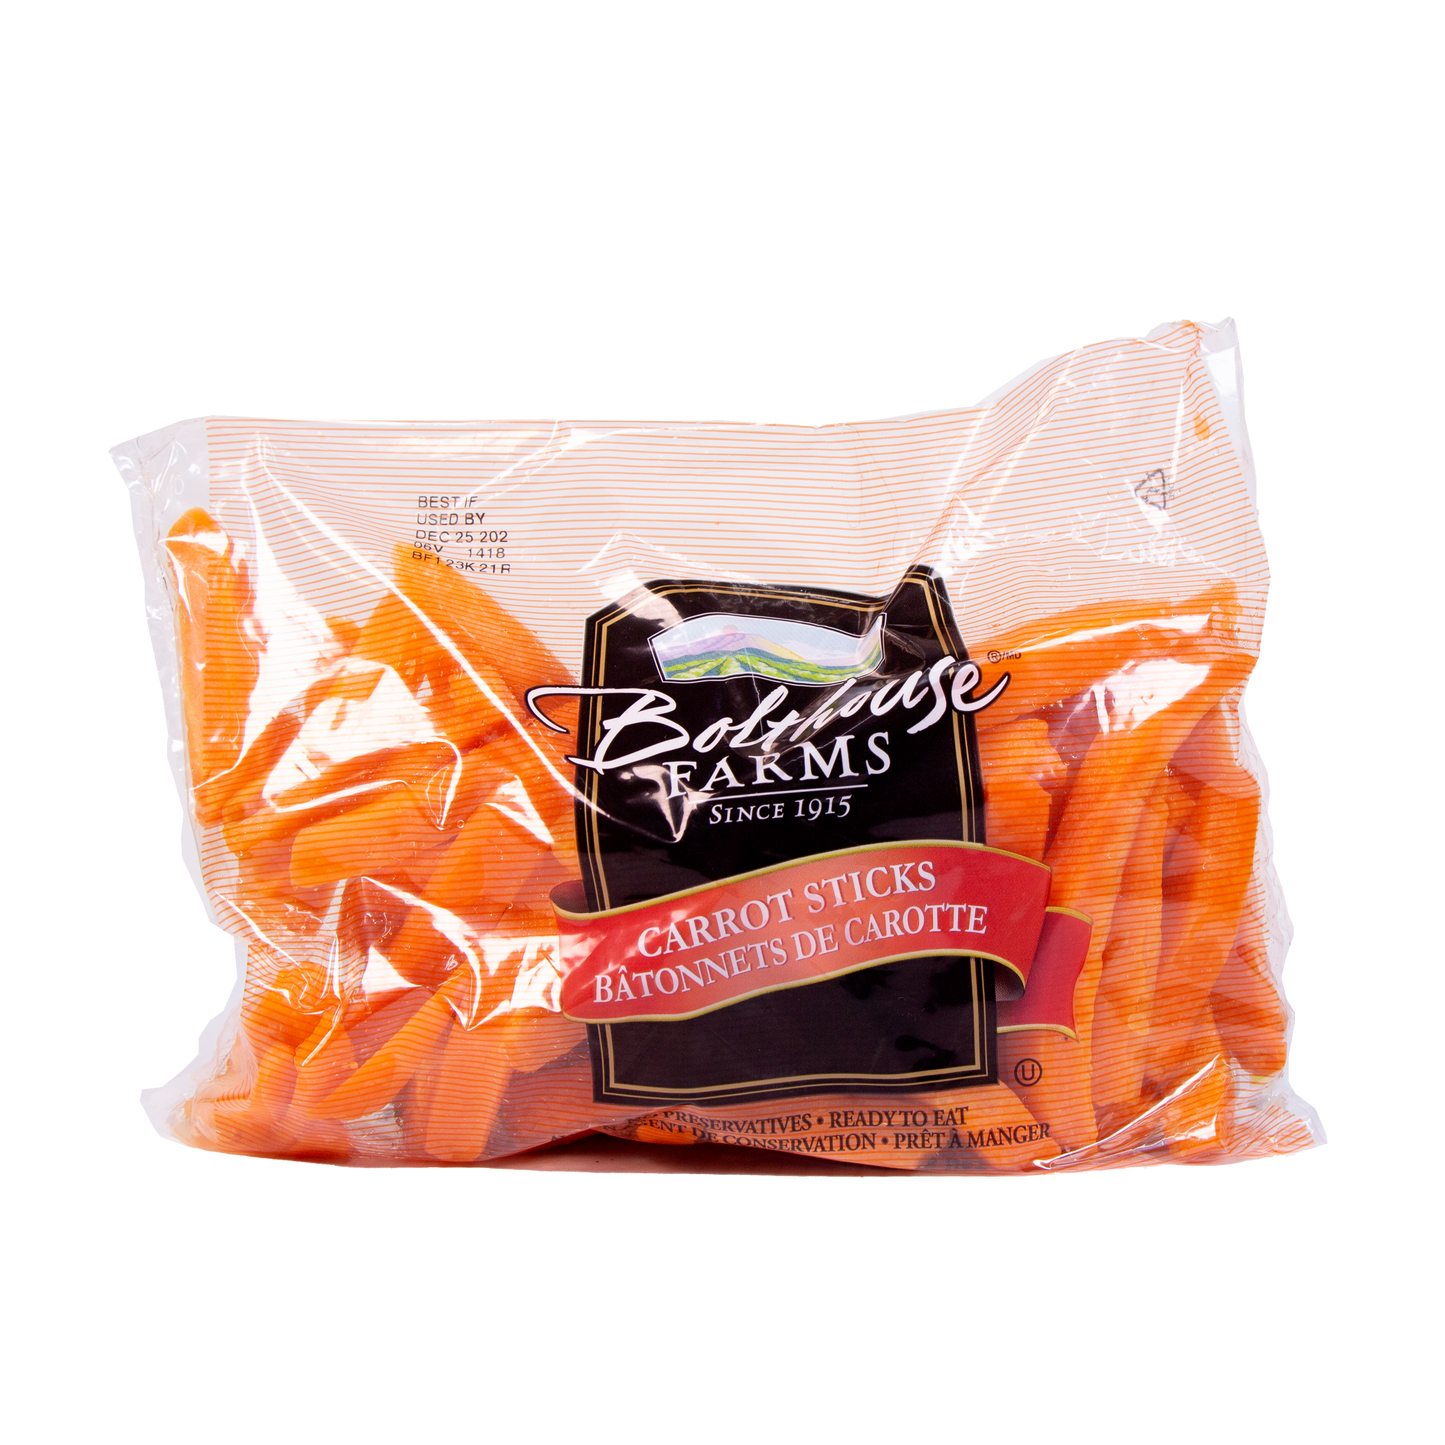 Bolthouse Farms - Carrot Sticks